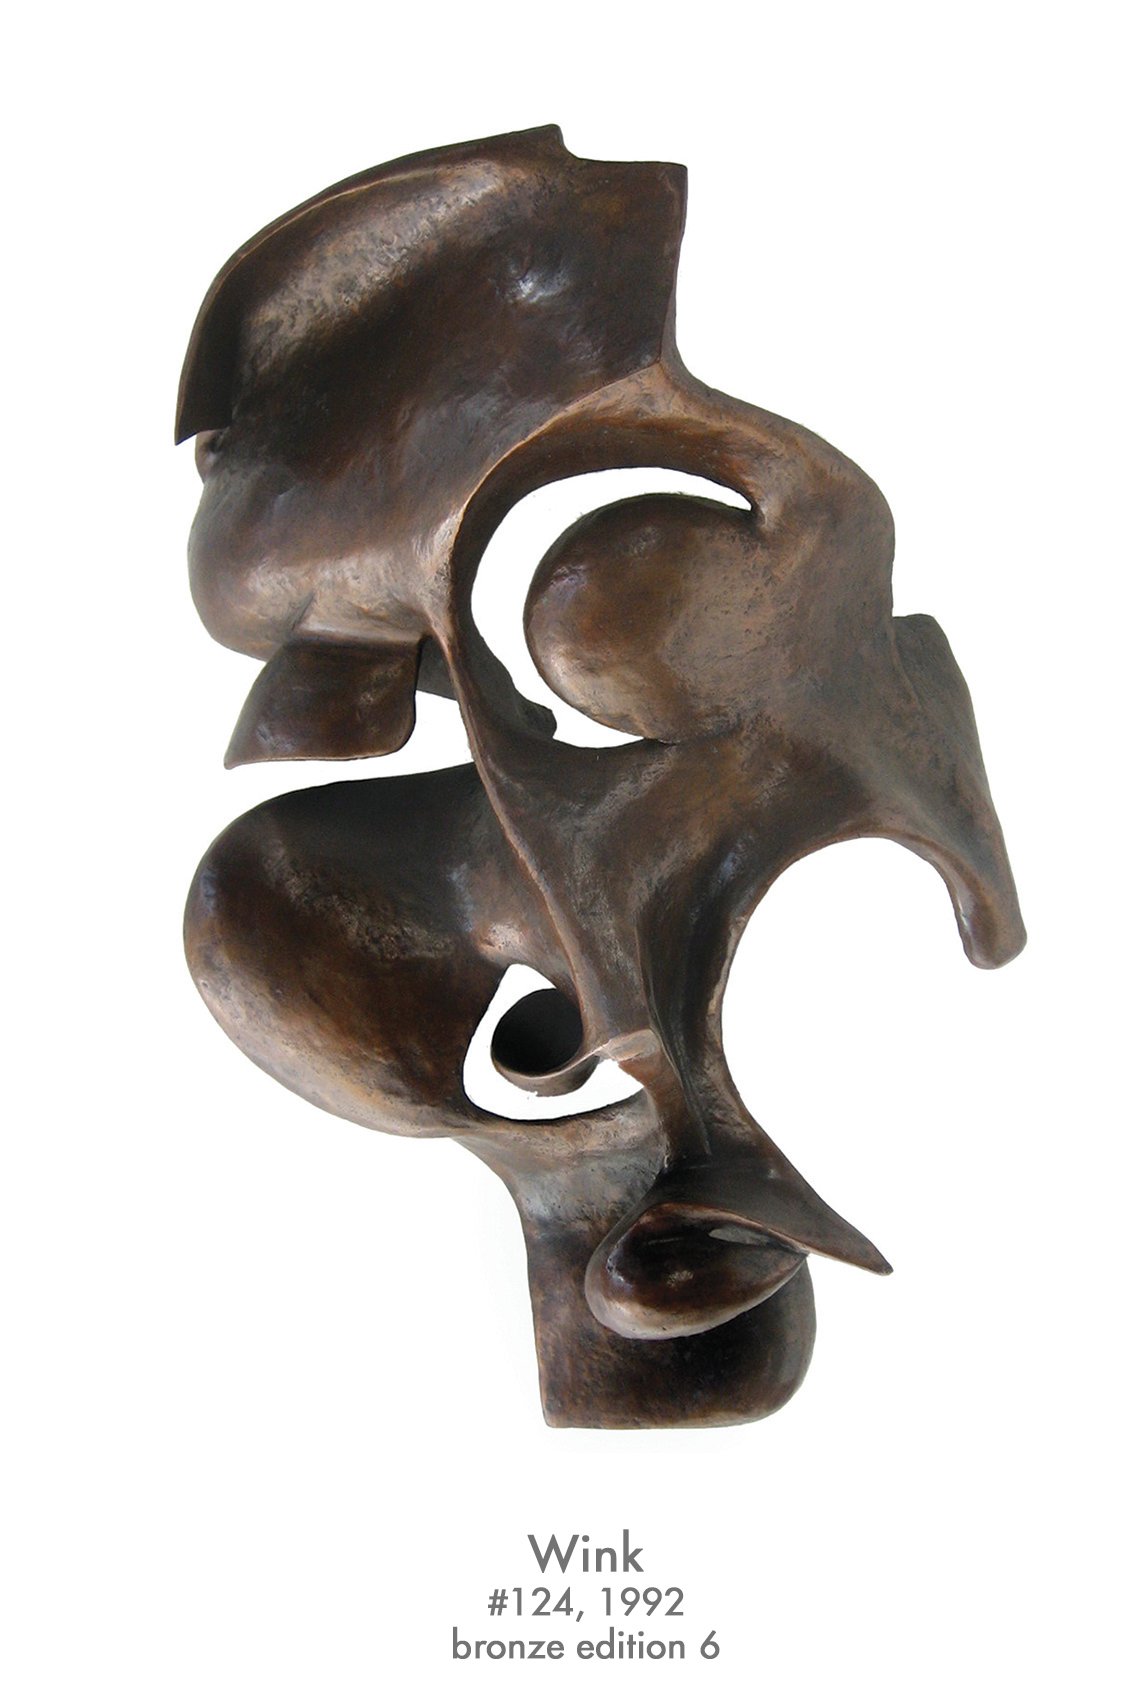 Wink, 1992, bronze, #124